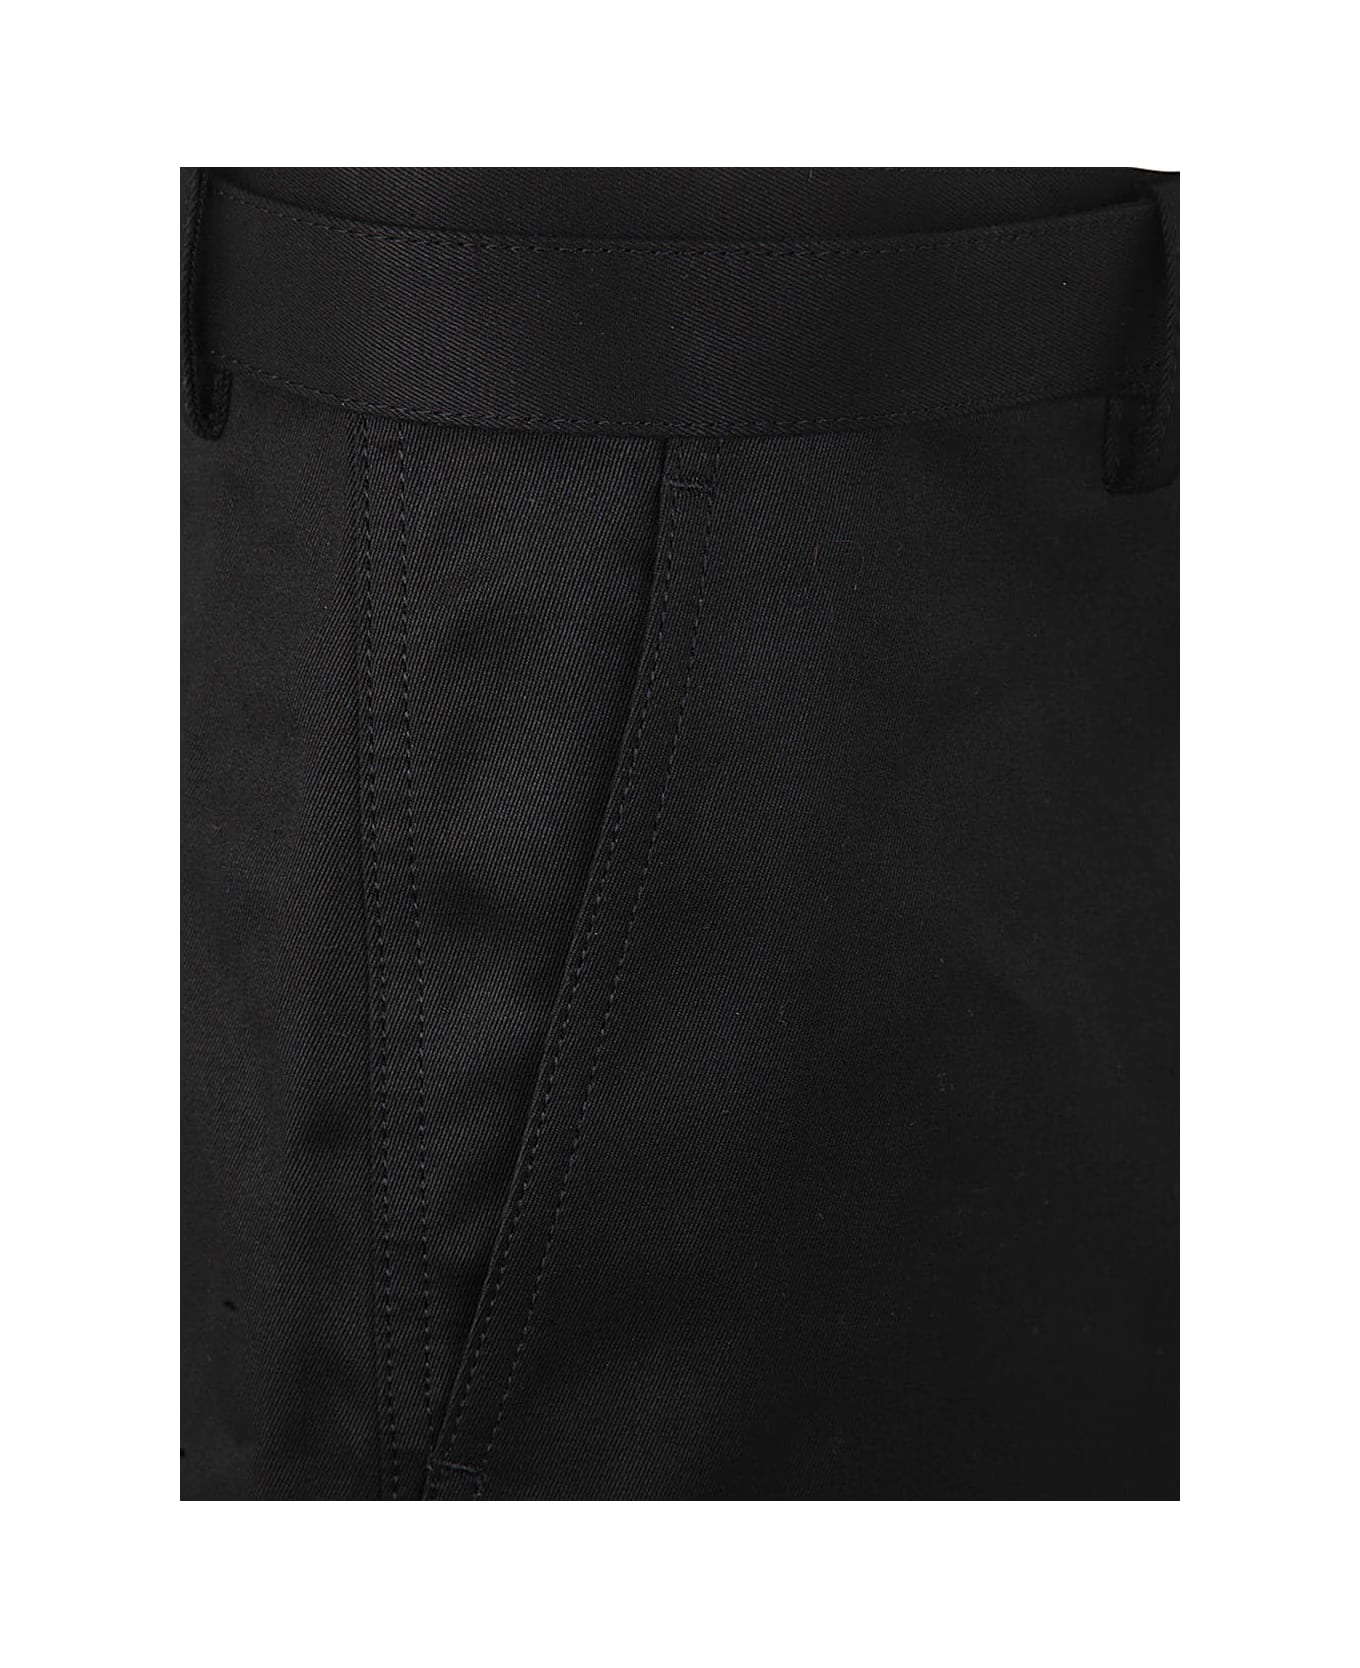 Sacai Cotton Chino Shorts - Black